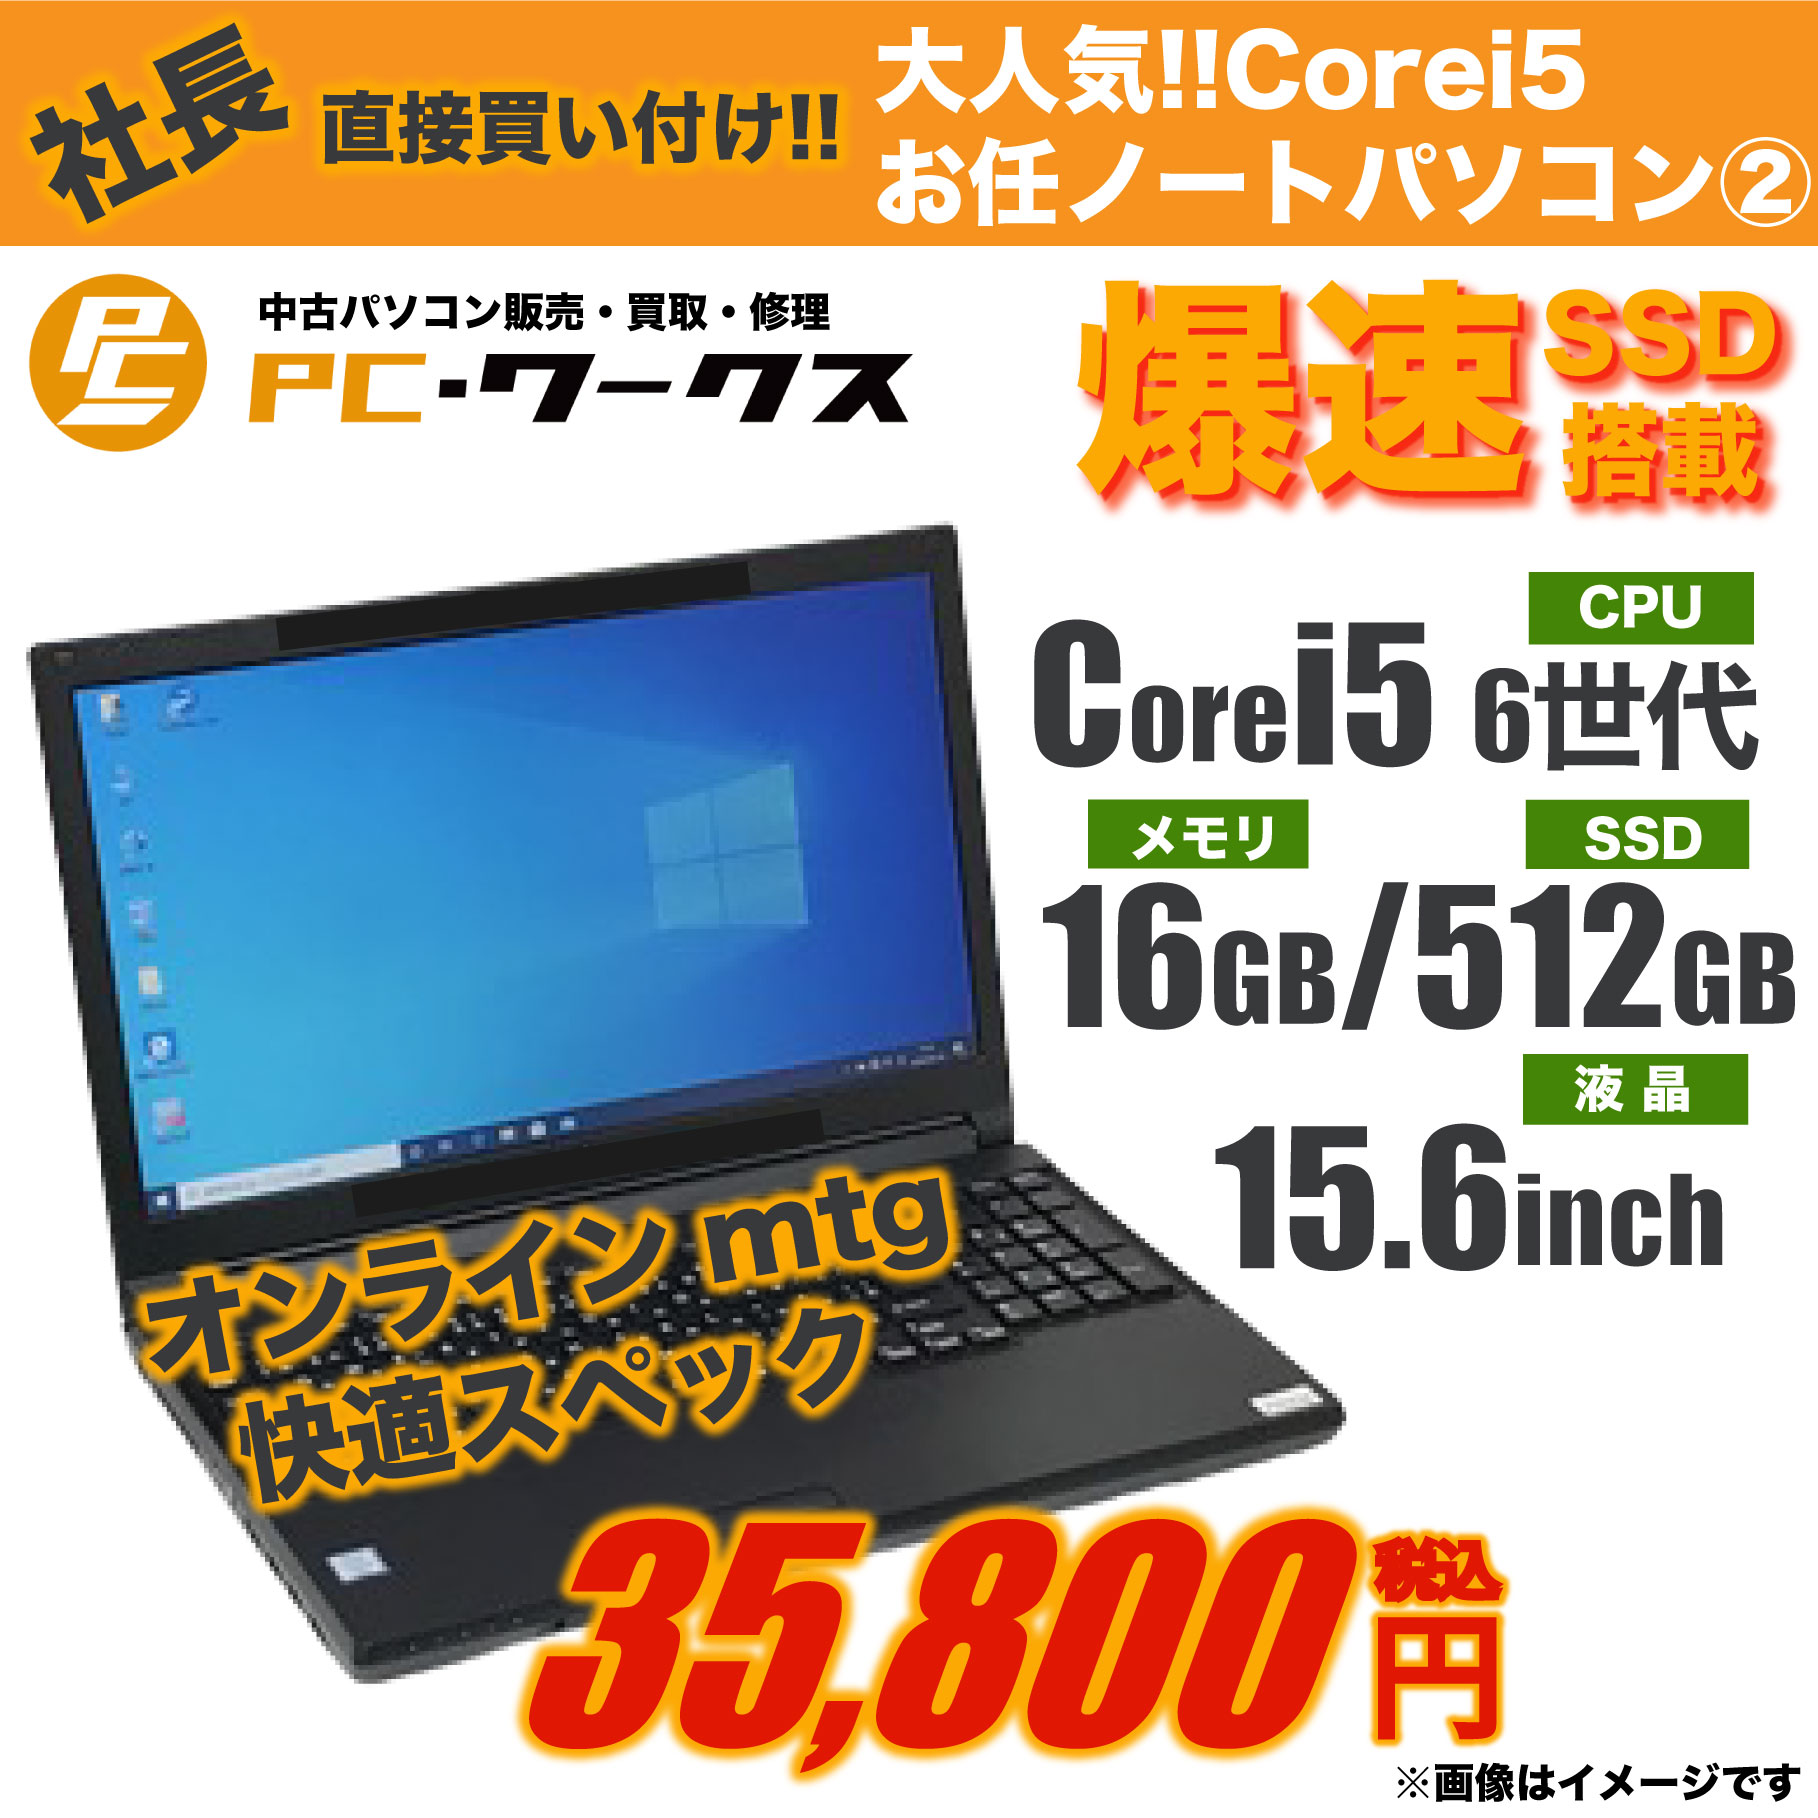 大人気 Corei5 お任せノートパソコン②15.6inch